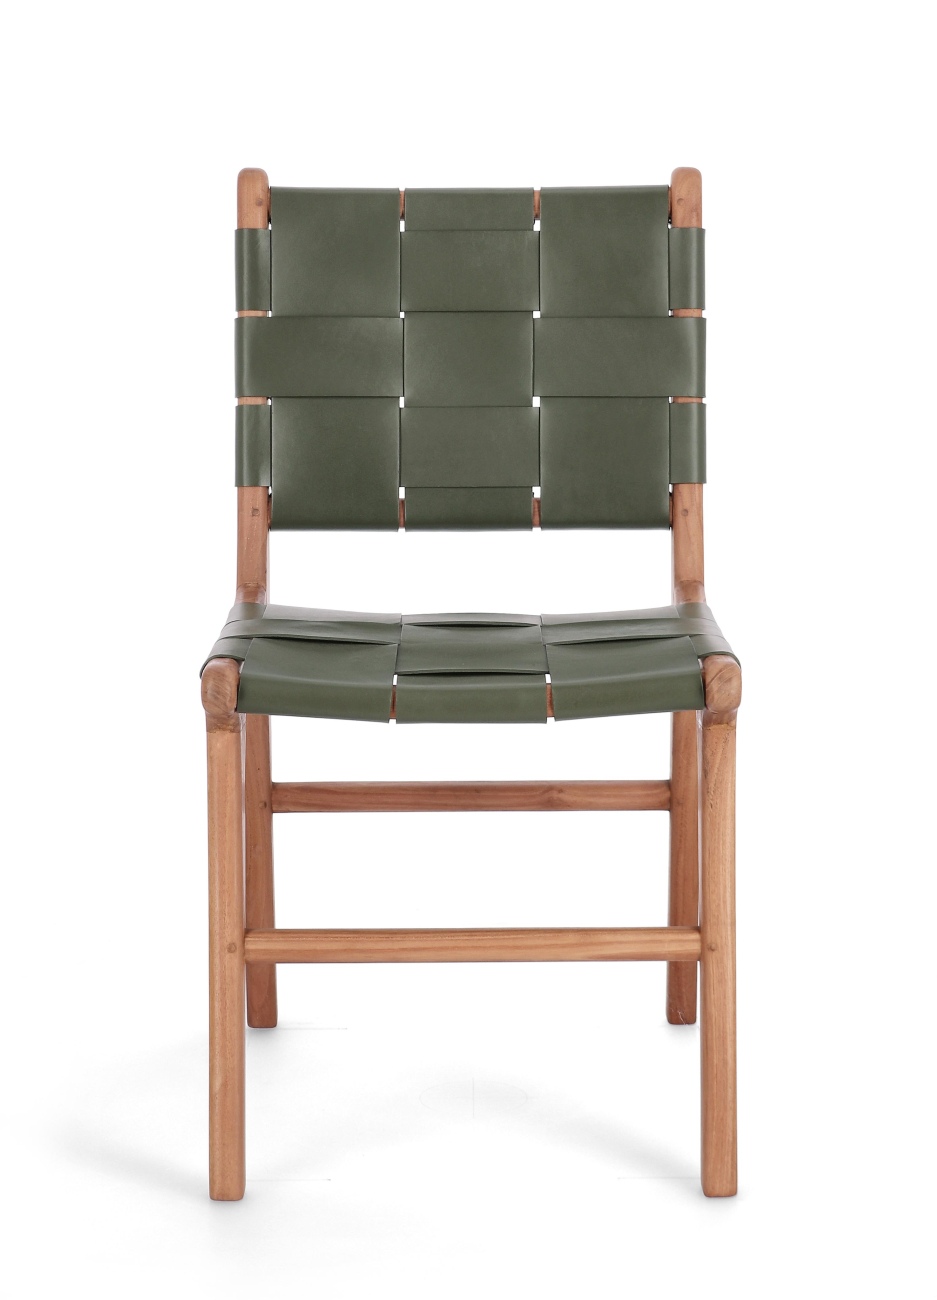 Der Esszimmerstuhl Joanna überzeugt mit seinem modernen Stil. Gefertigt wurde er aus Leder, welches einen grünen Farbton besitzt. Das Gestell ist aus Teakholz und hat eine natürliche Farbe. Der Stuhl besitzt eine Sitzhöhe von 45 cm.